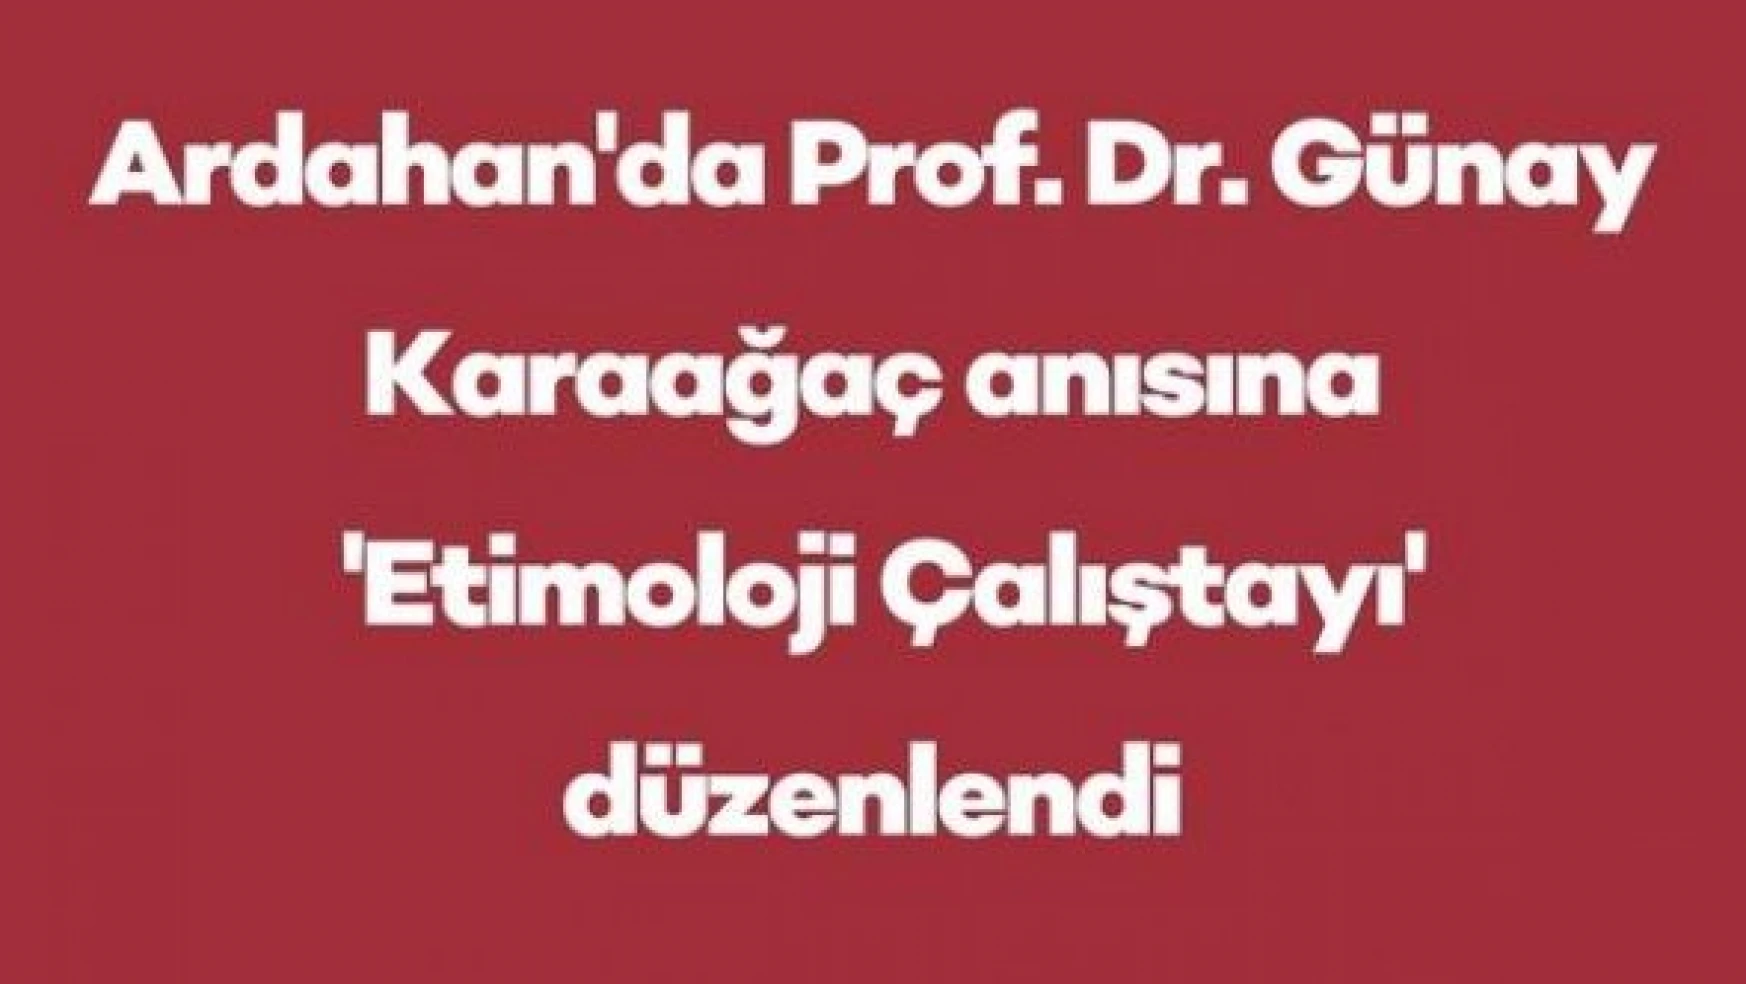 Ardahan'da Prof. Dr. Günay Karaağaç anısına 'Etimoloji Çalıştayı' düzenlendi